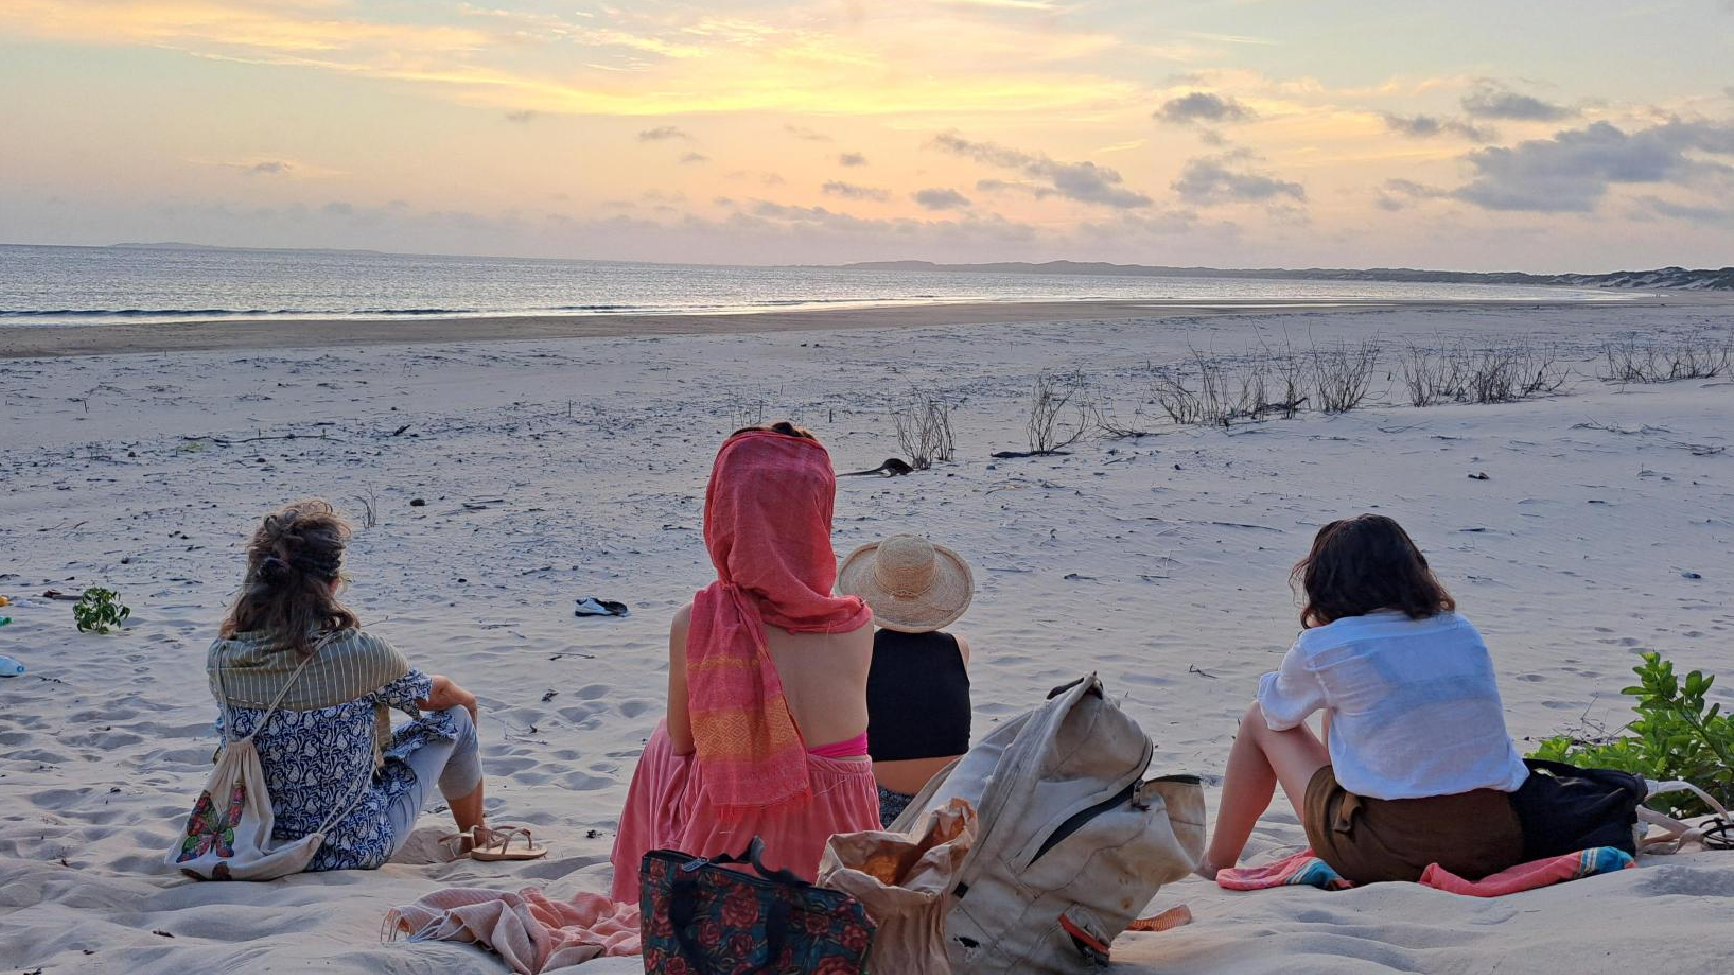 Digital Nomads in Kenya enjoy a sunset